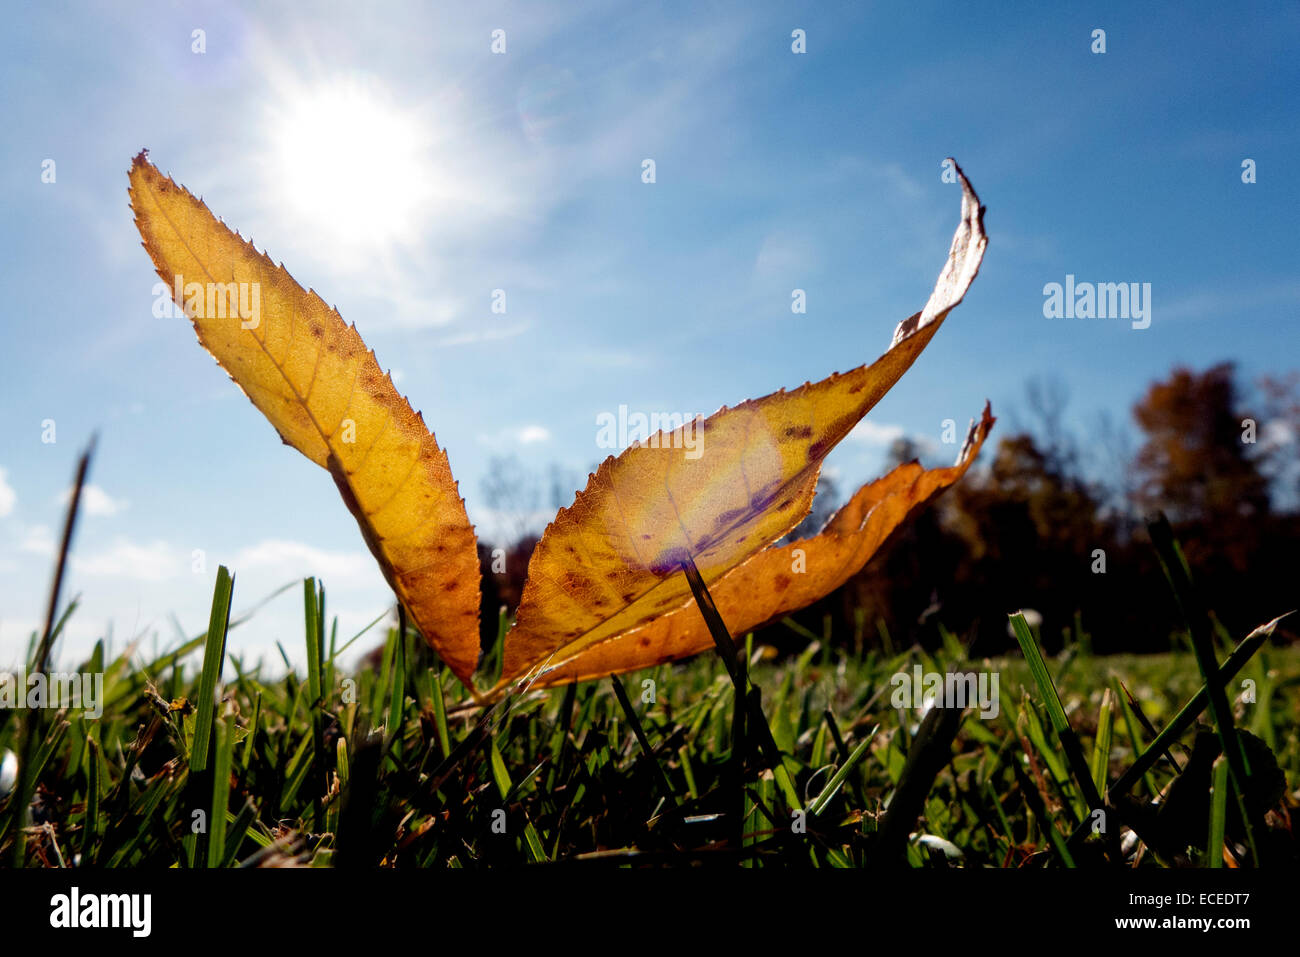 Fallen leafs backlit by sun. Stock Photo